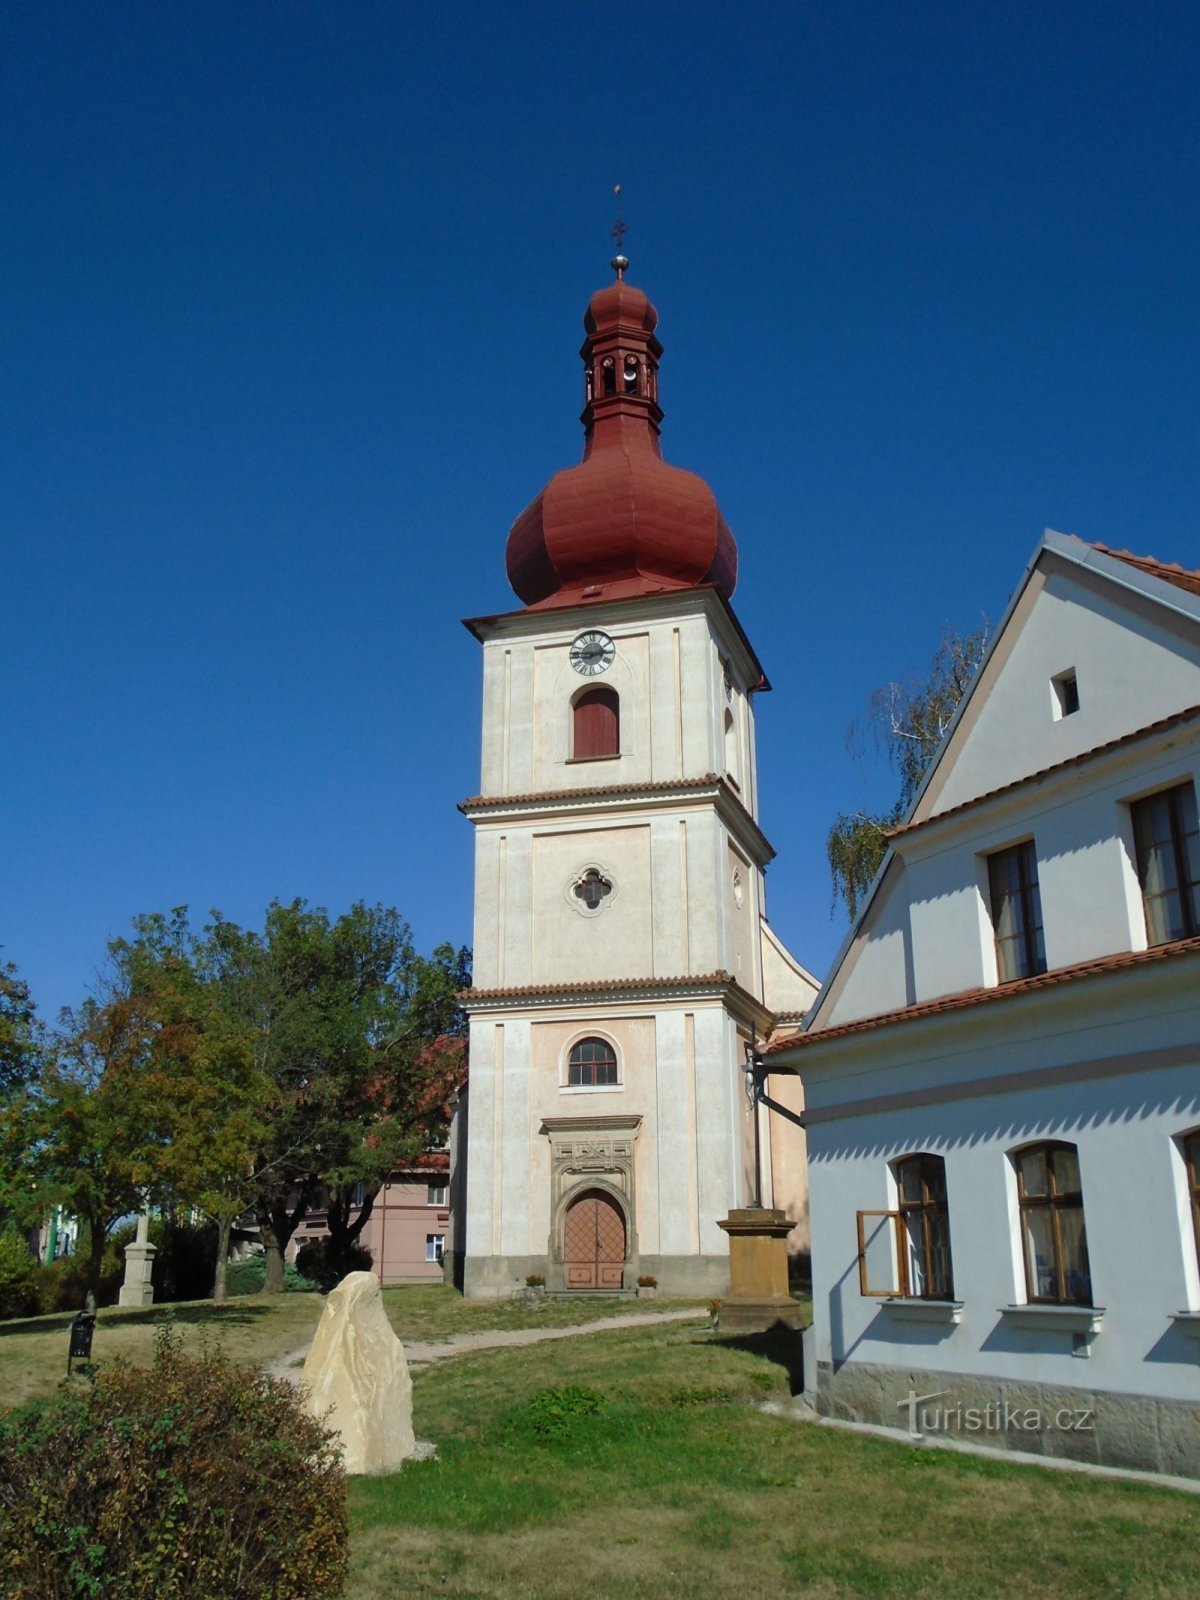 Cerkev sv. Jakub (Jaroměř, 12.9.2018. XNUMX. XNUMX)